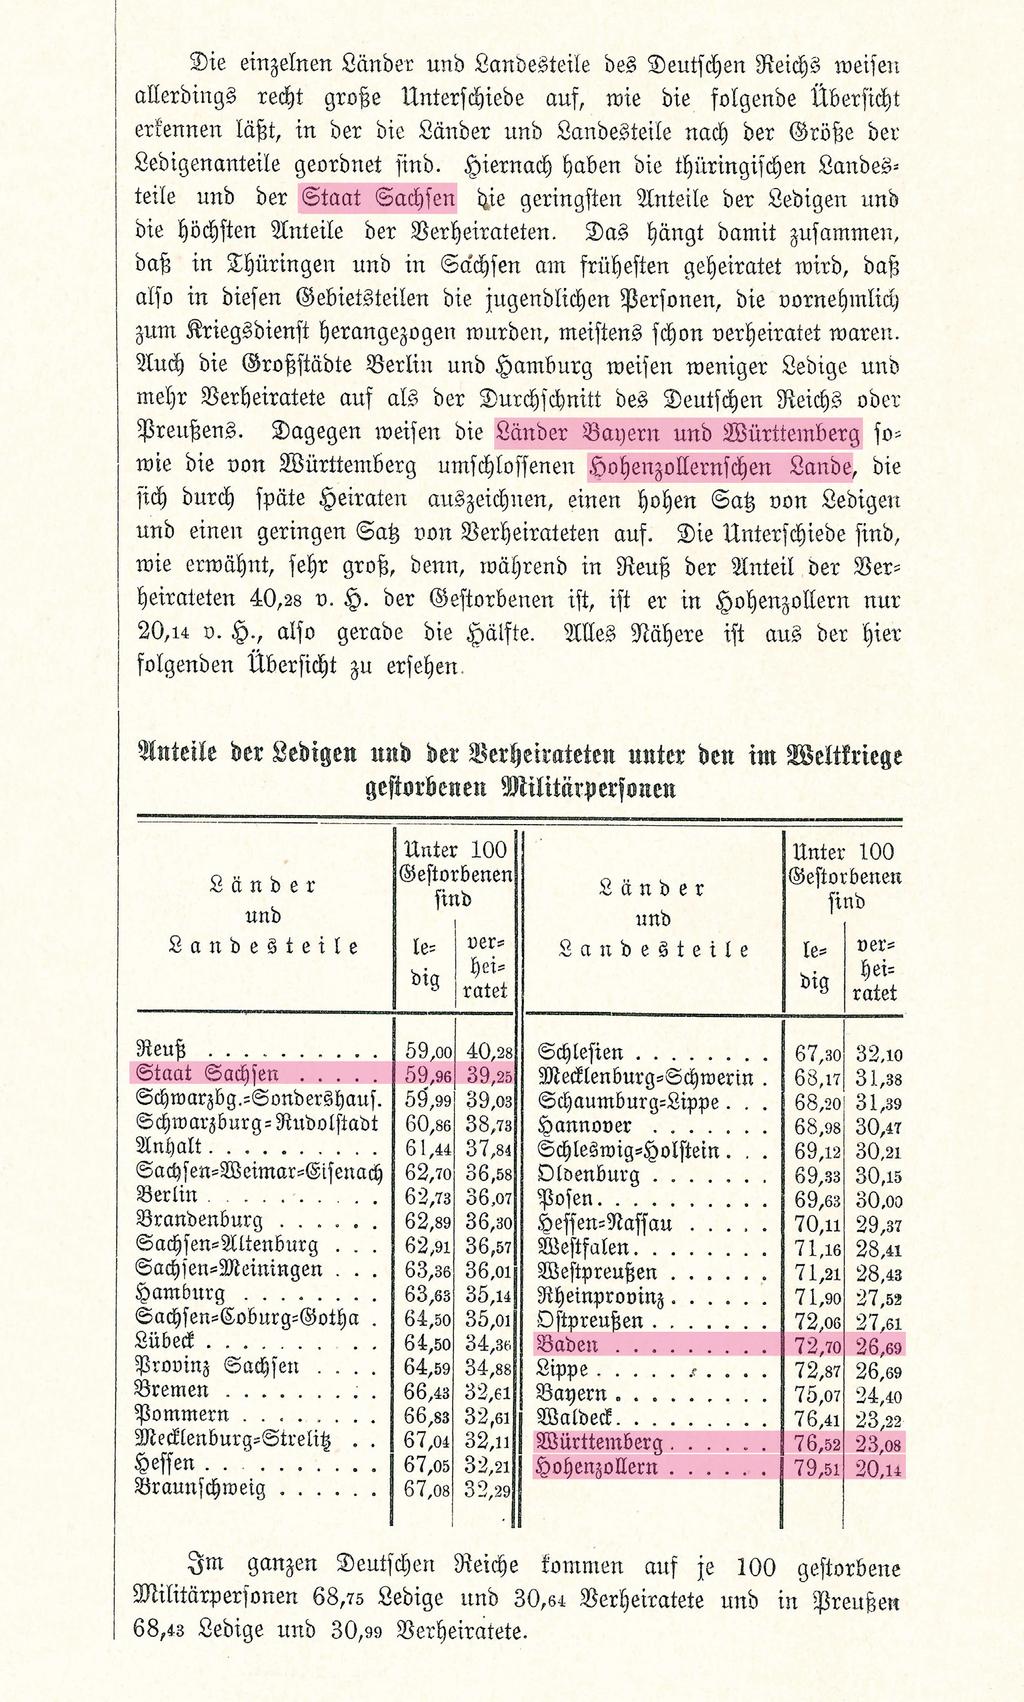 Quelle: Statistik des Deutschen Reichs, Band 276 Bewegung der Bevölkerung in den Jahren 1914 bis 1919,